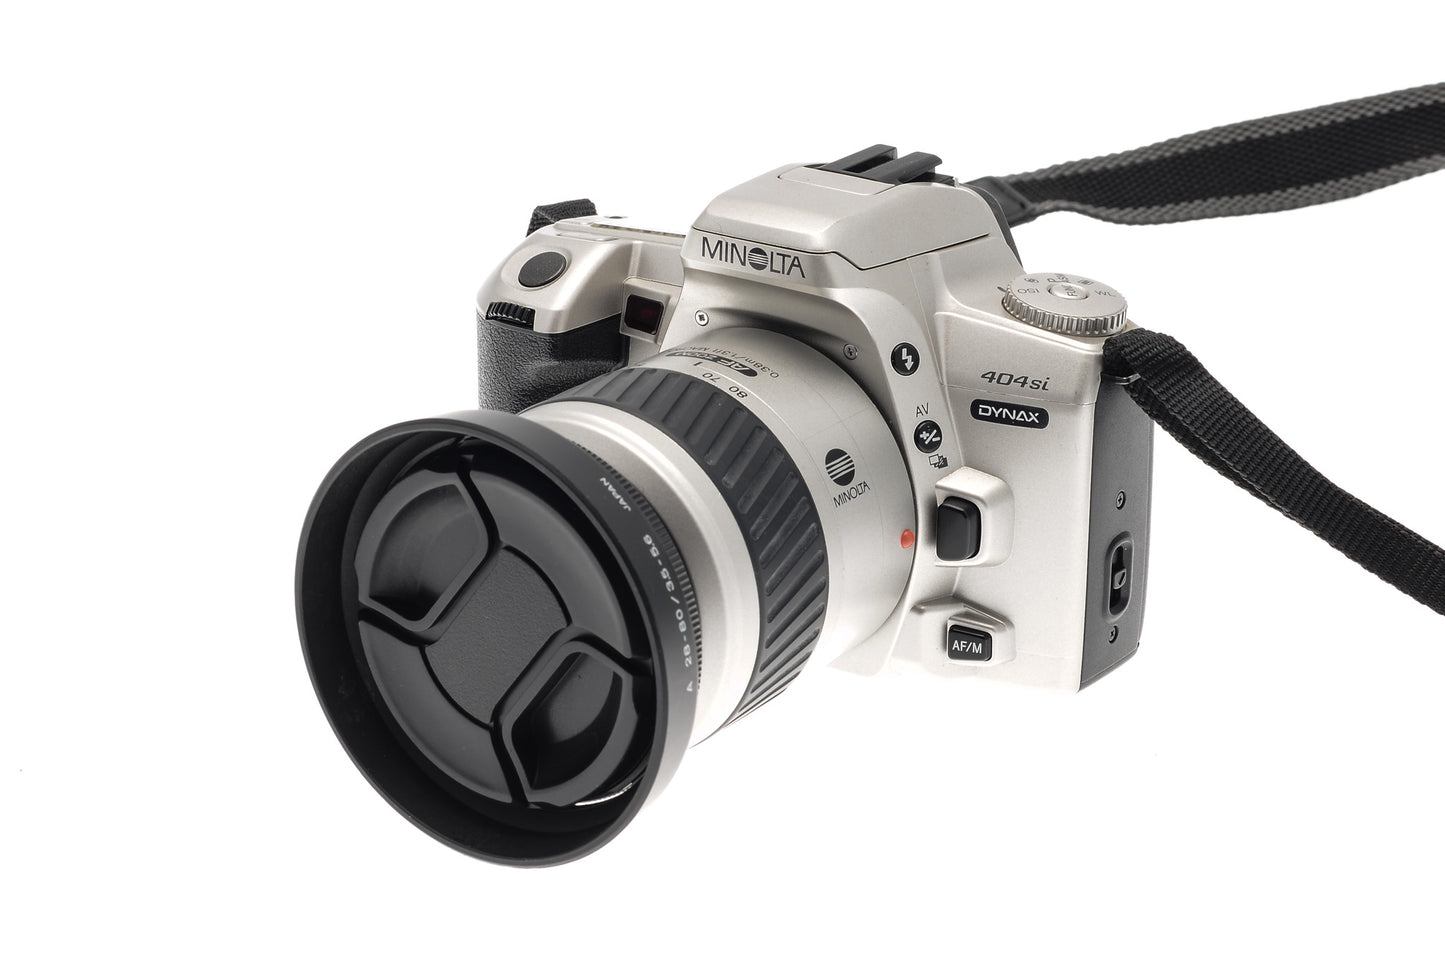 Minolta Dynax 404si + 28-80mm f3.5-5.6 AF Zoom Macro